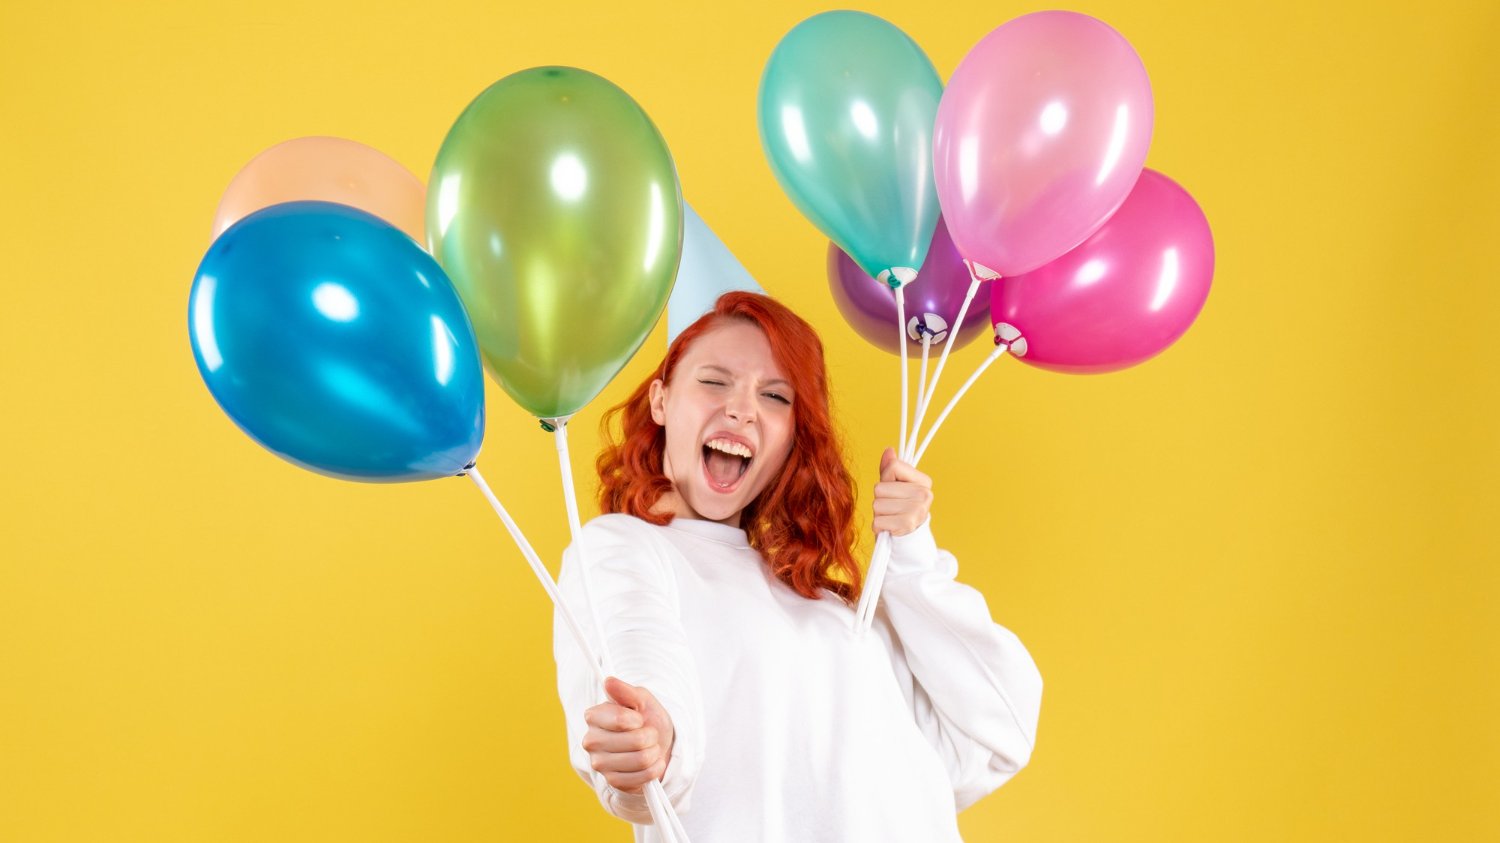 Mulher branca com cabelos ruivos sorrindo e segurando vários balões de festa